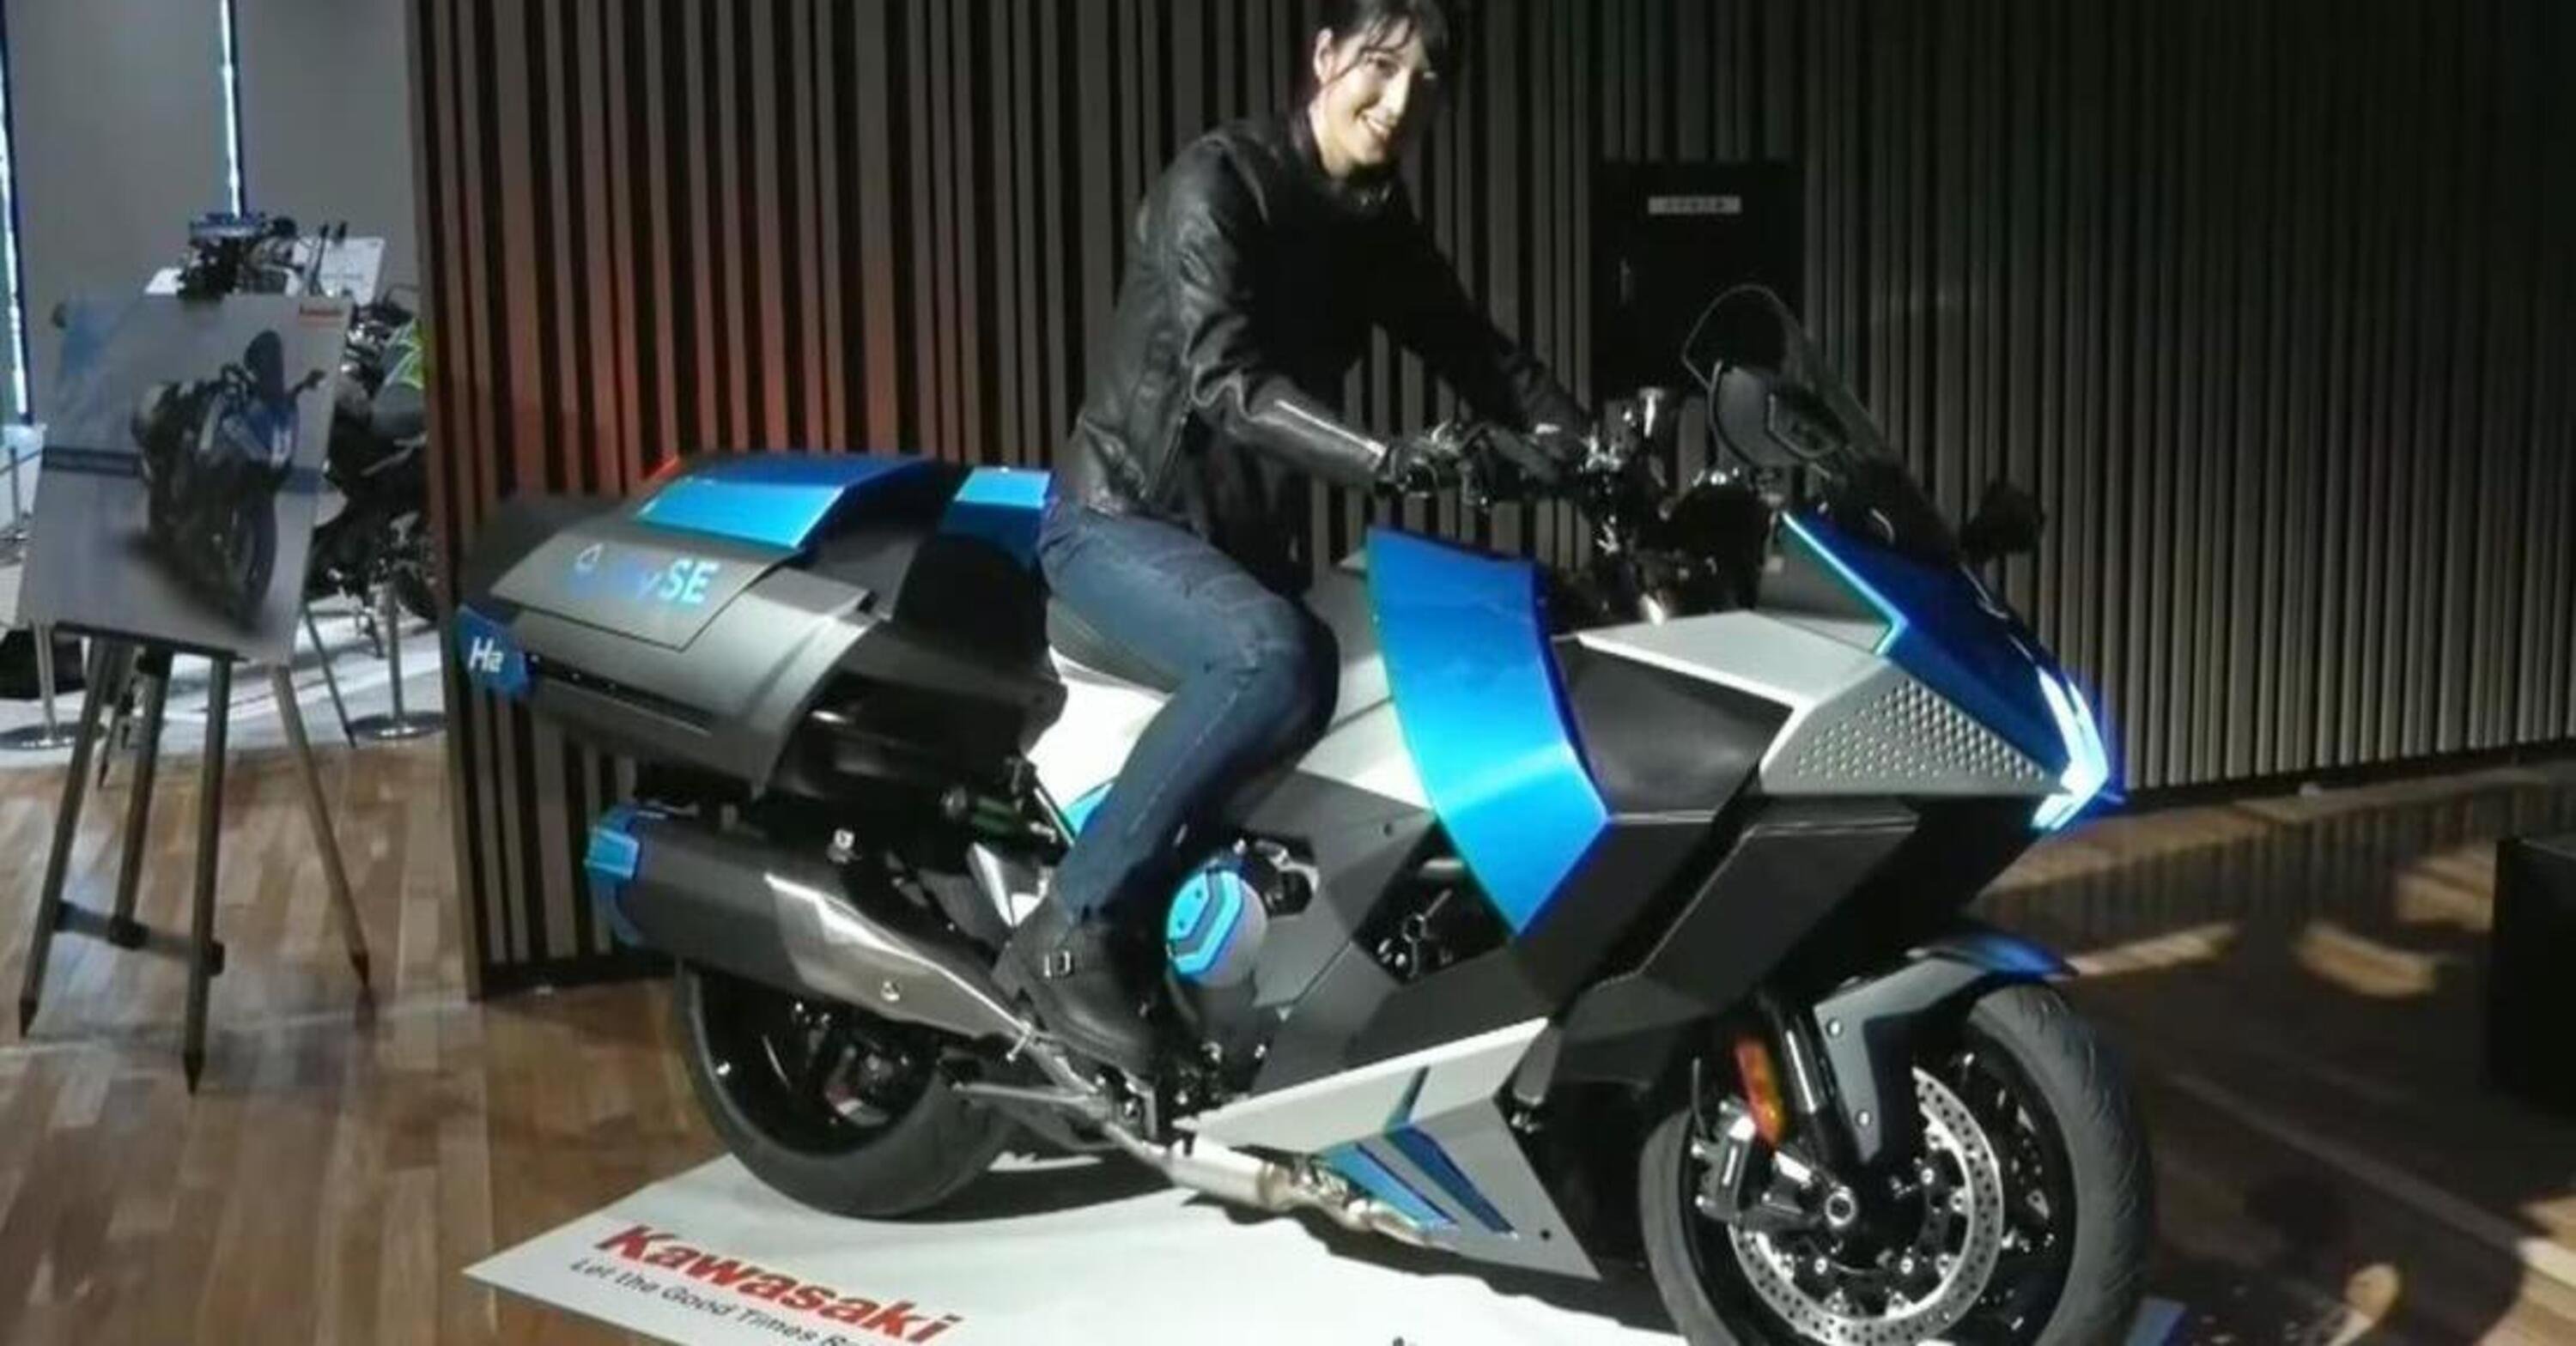 Kawasaki a idrogeno: la Ninja H2 HySe prossima ai test su strada